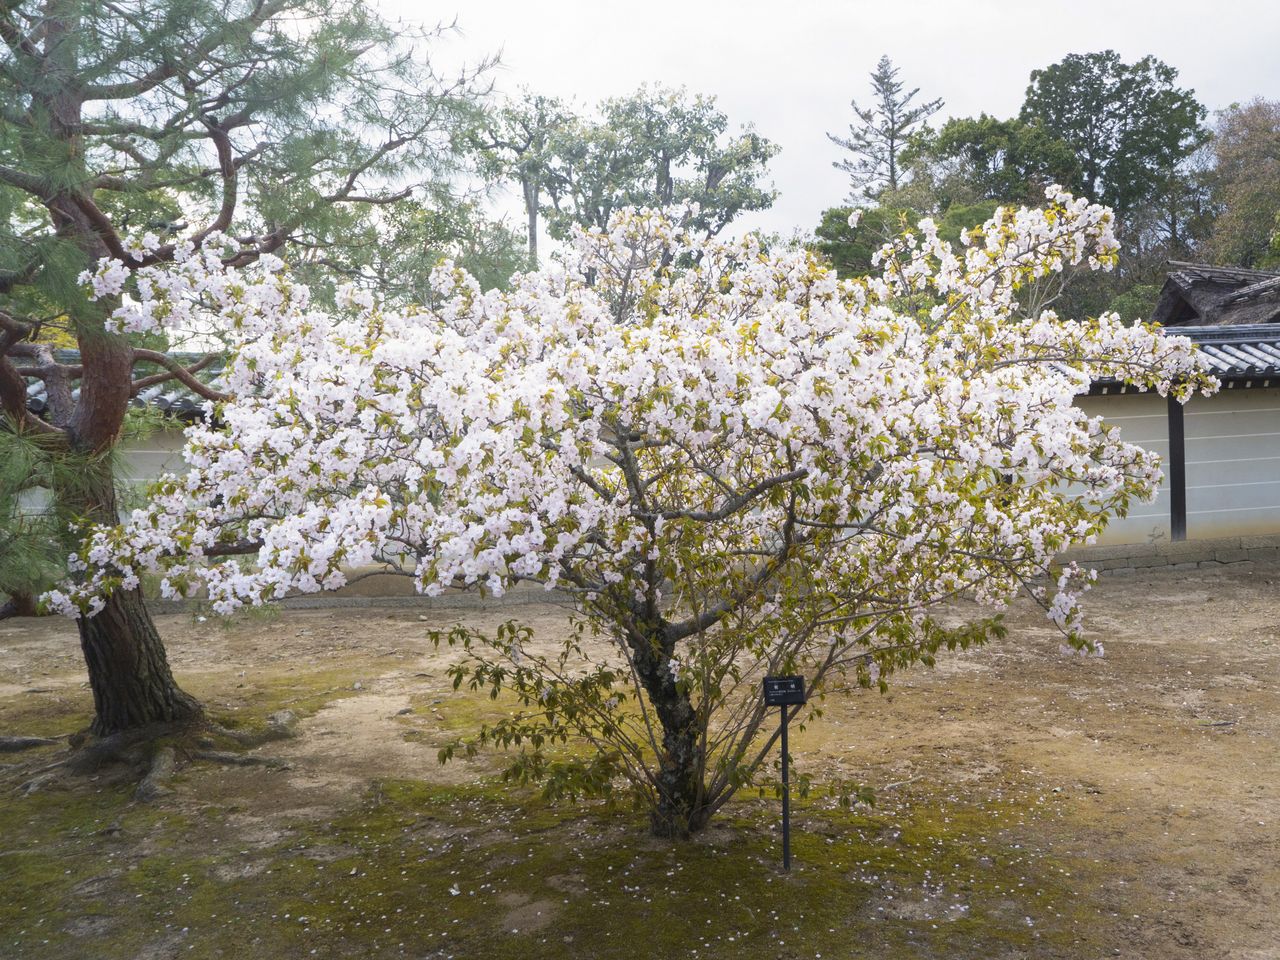 Les fleurs blanches odorantes sont la particularité des cerisiers de la variété ariake.